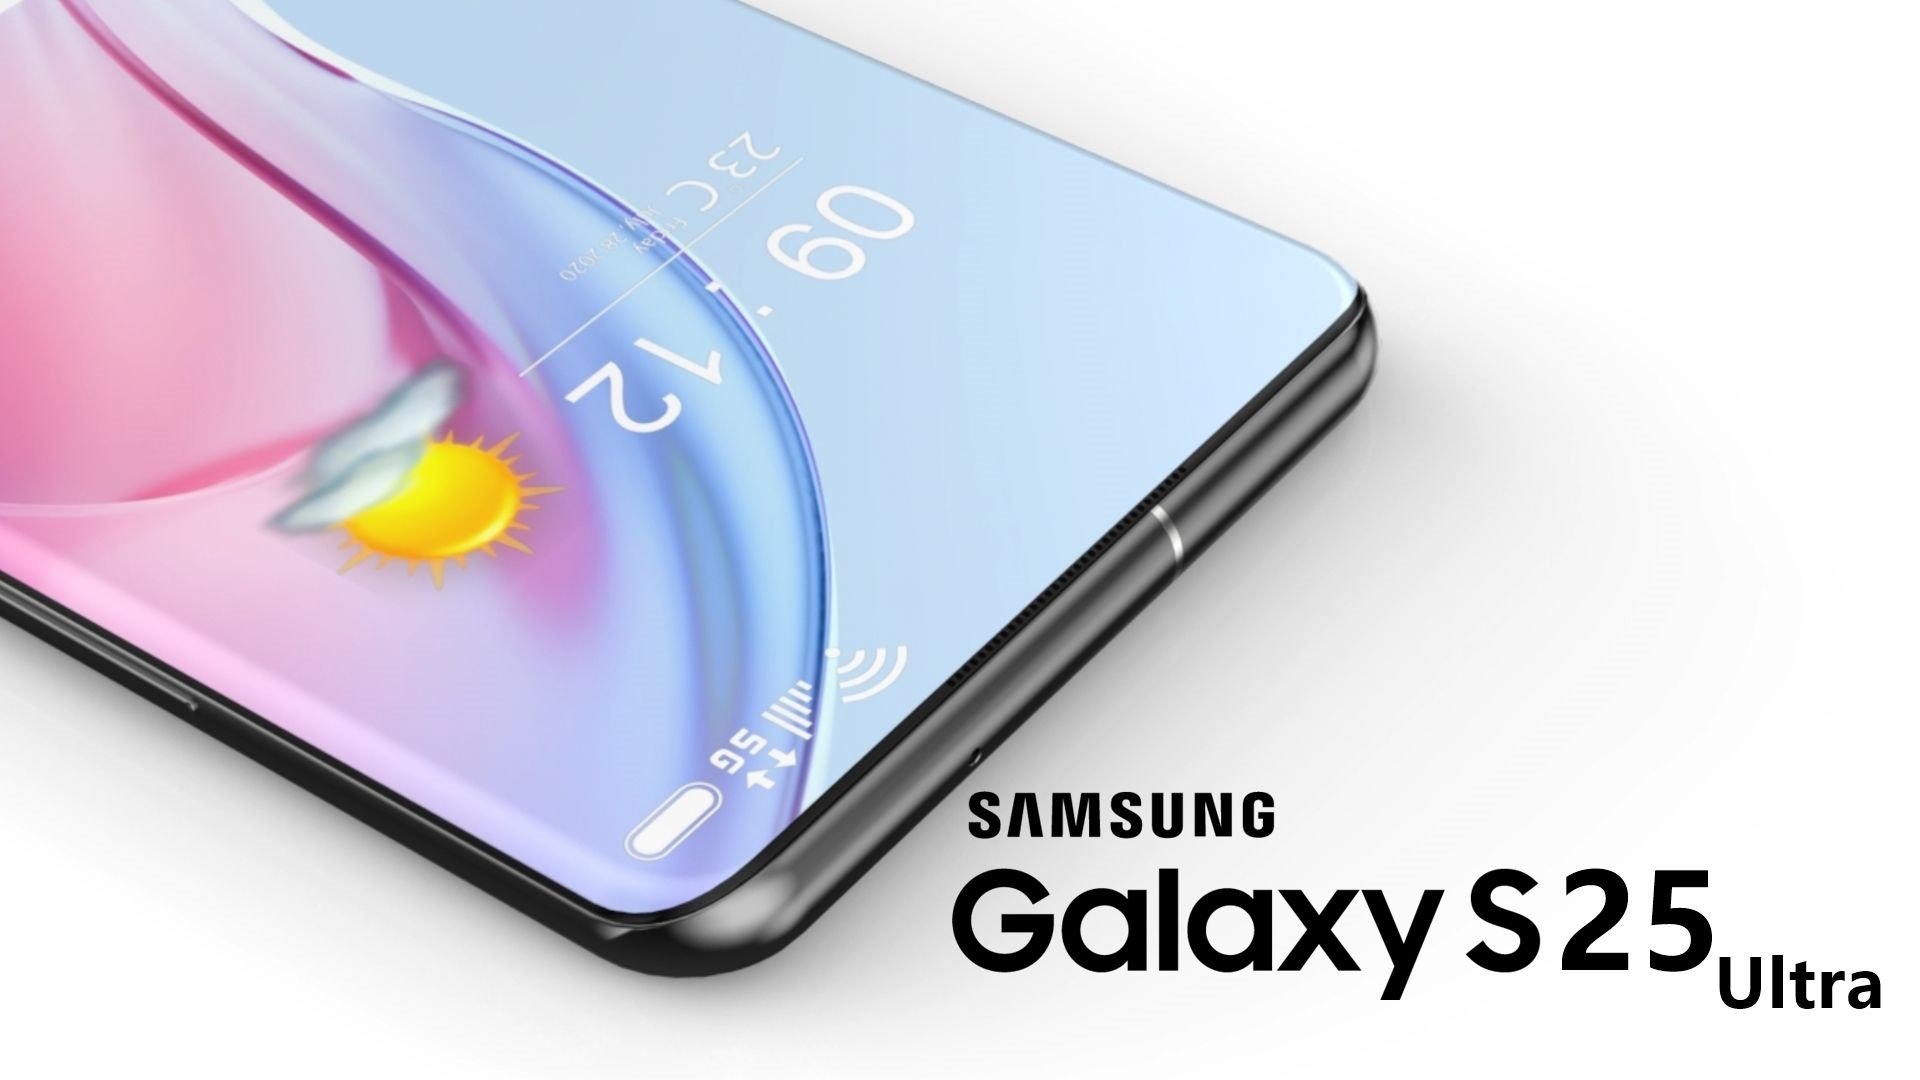 Samsung GALAXY S25 enthüllte neue Änderungen an den Hauptkameras